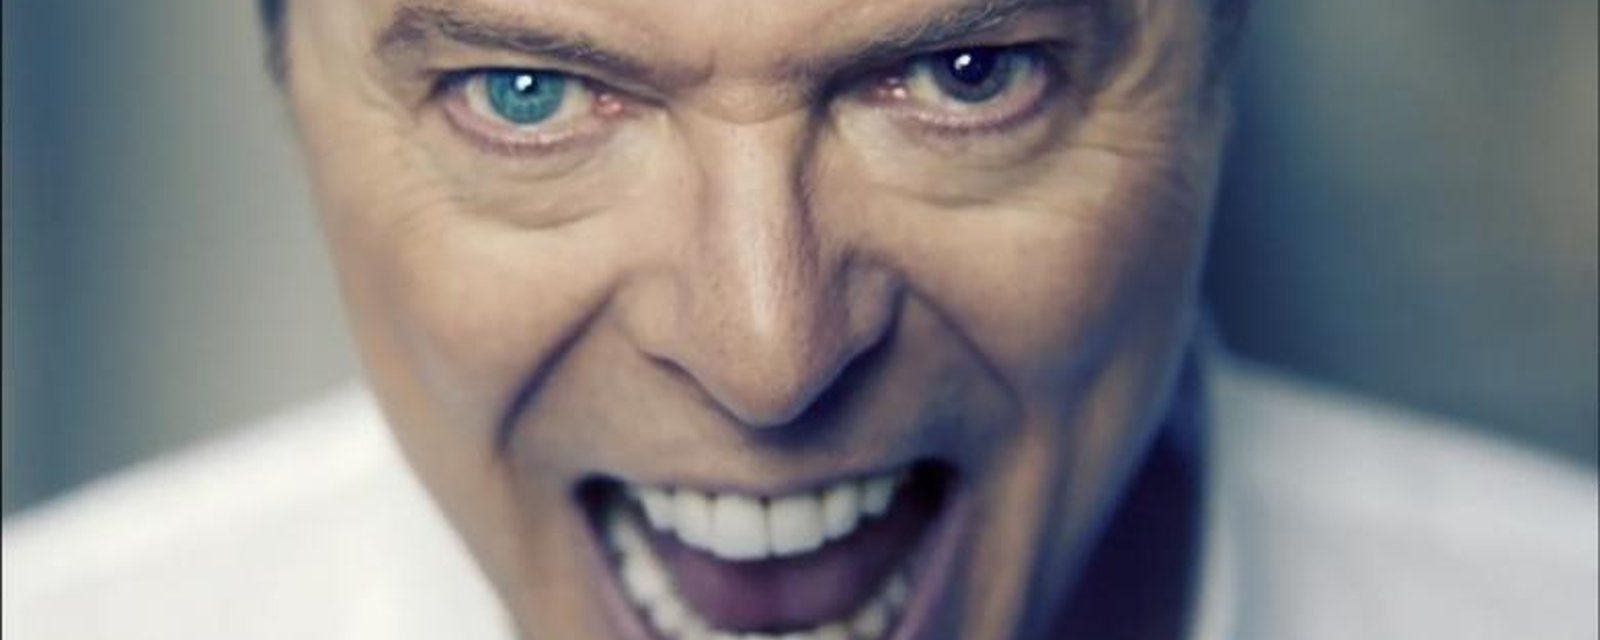 De troublants et violents incidents du passé de David Bowie refont surface